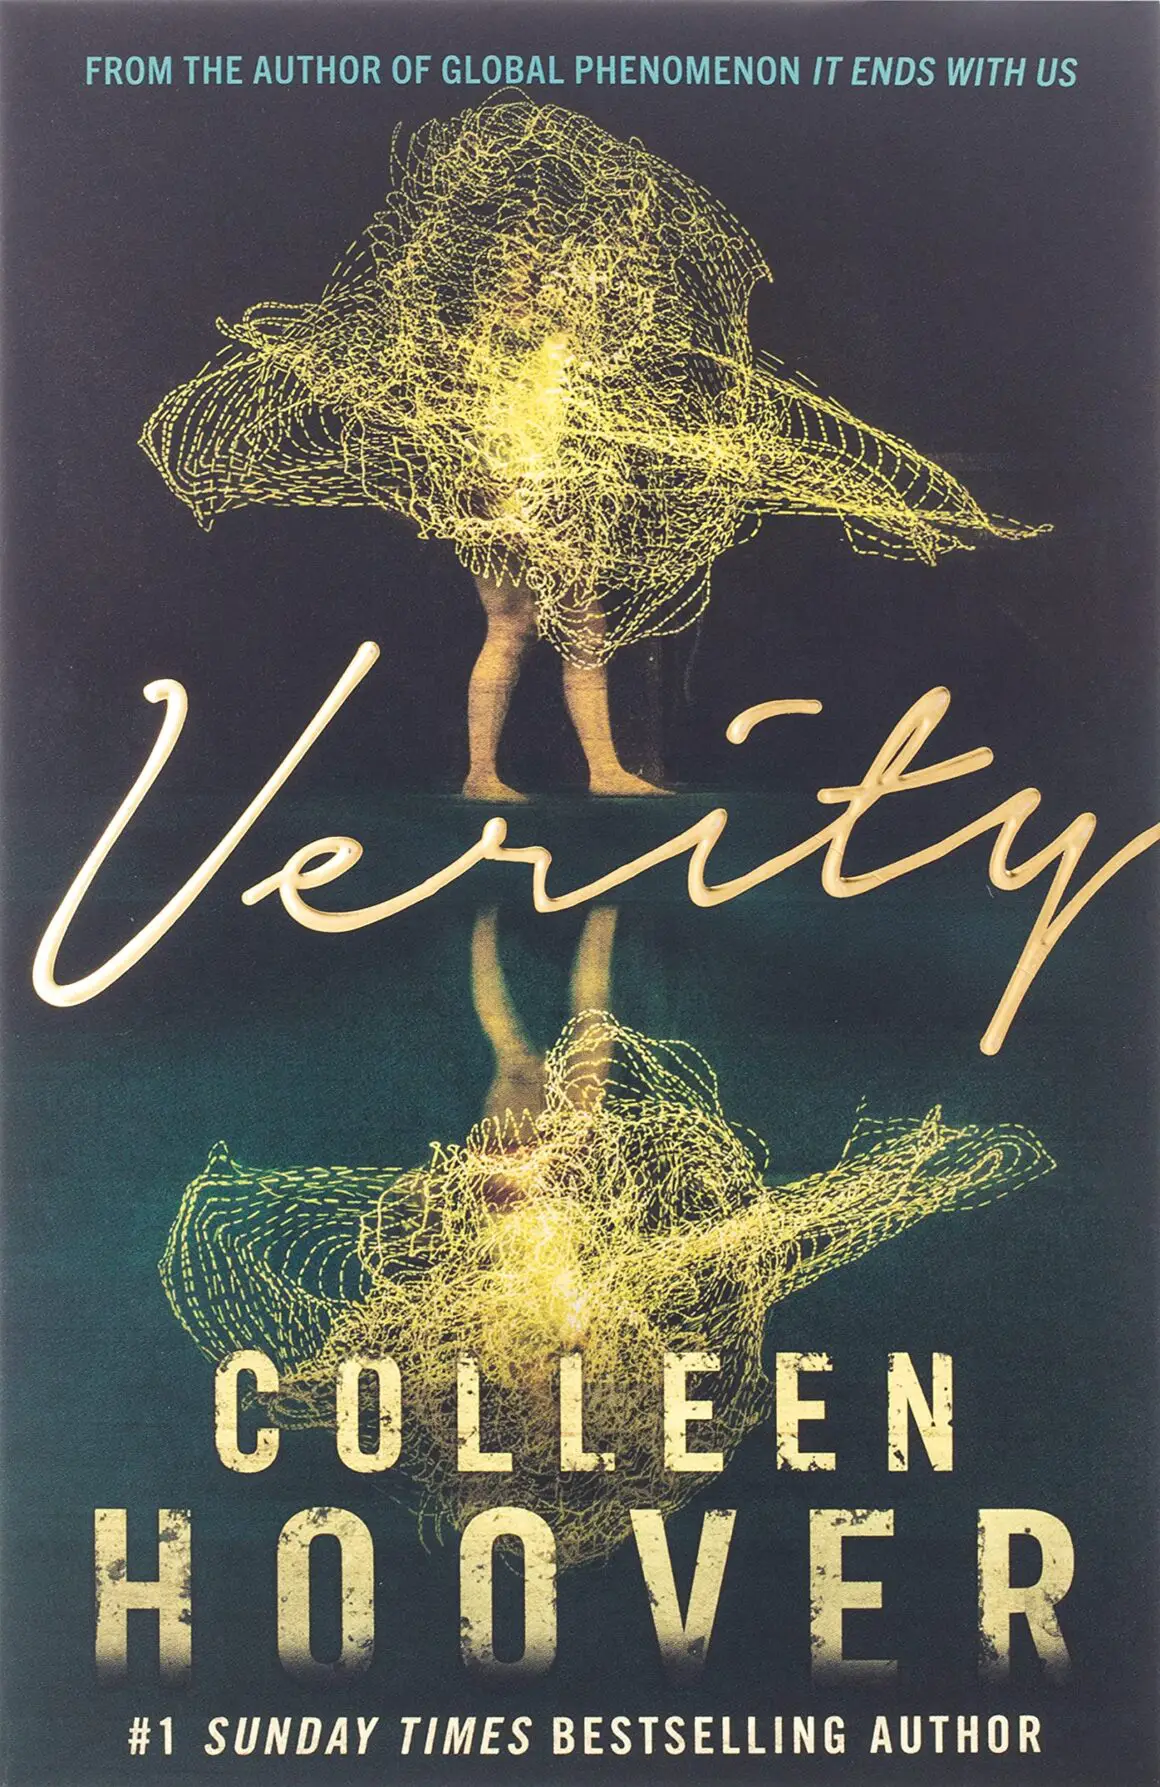 Les dernières sorties littéraires de Colleen Hoover - Culturius